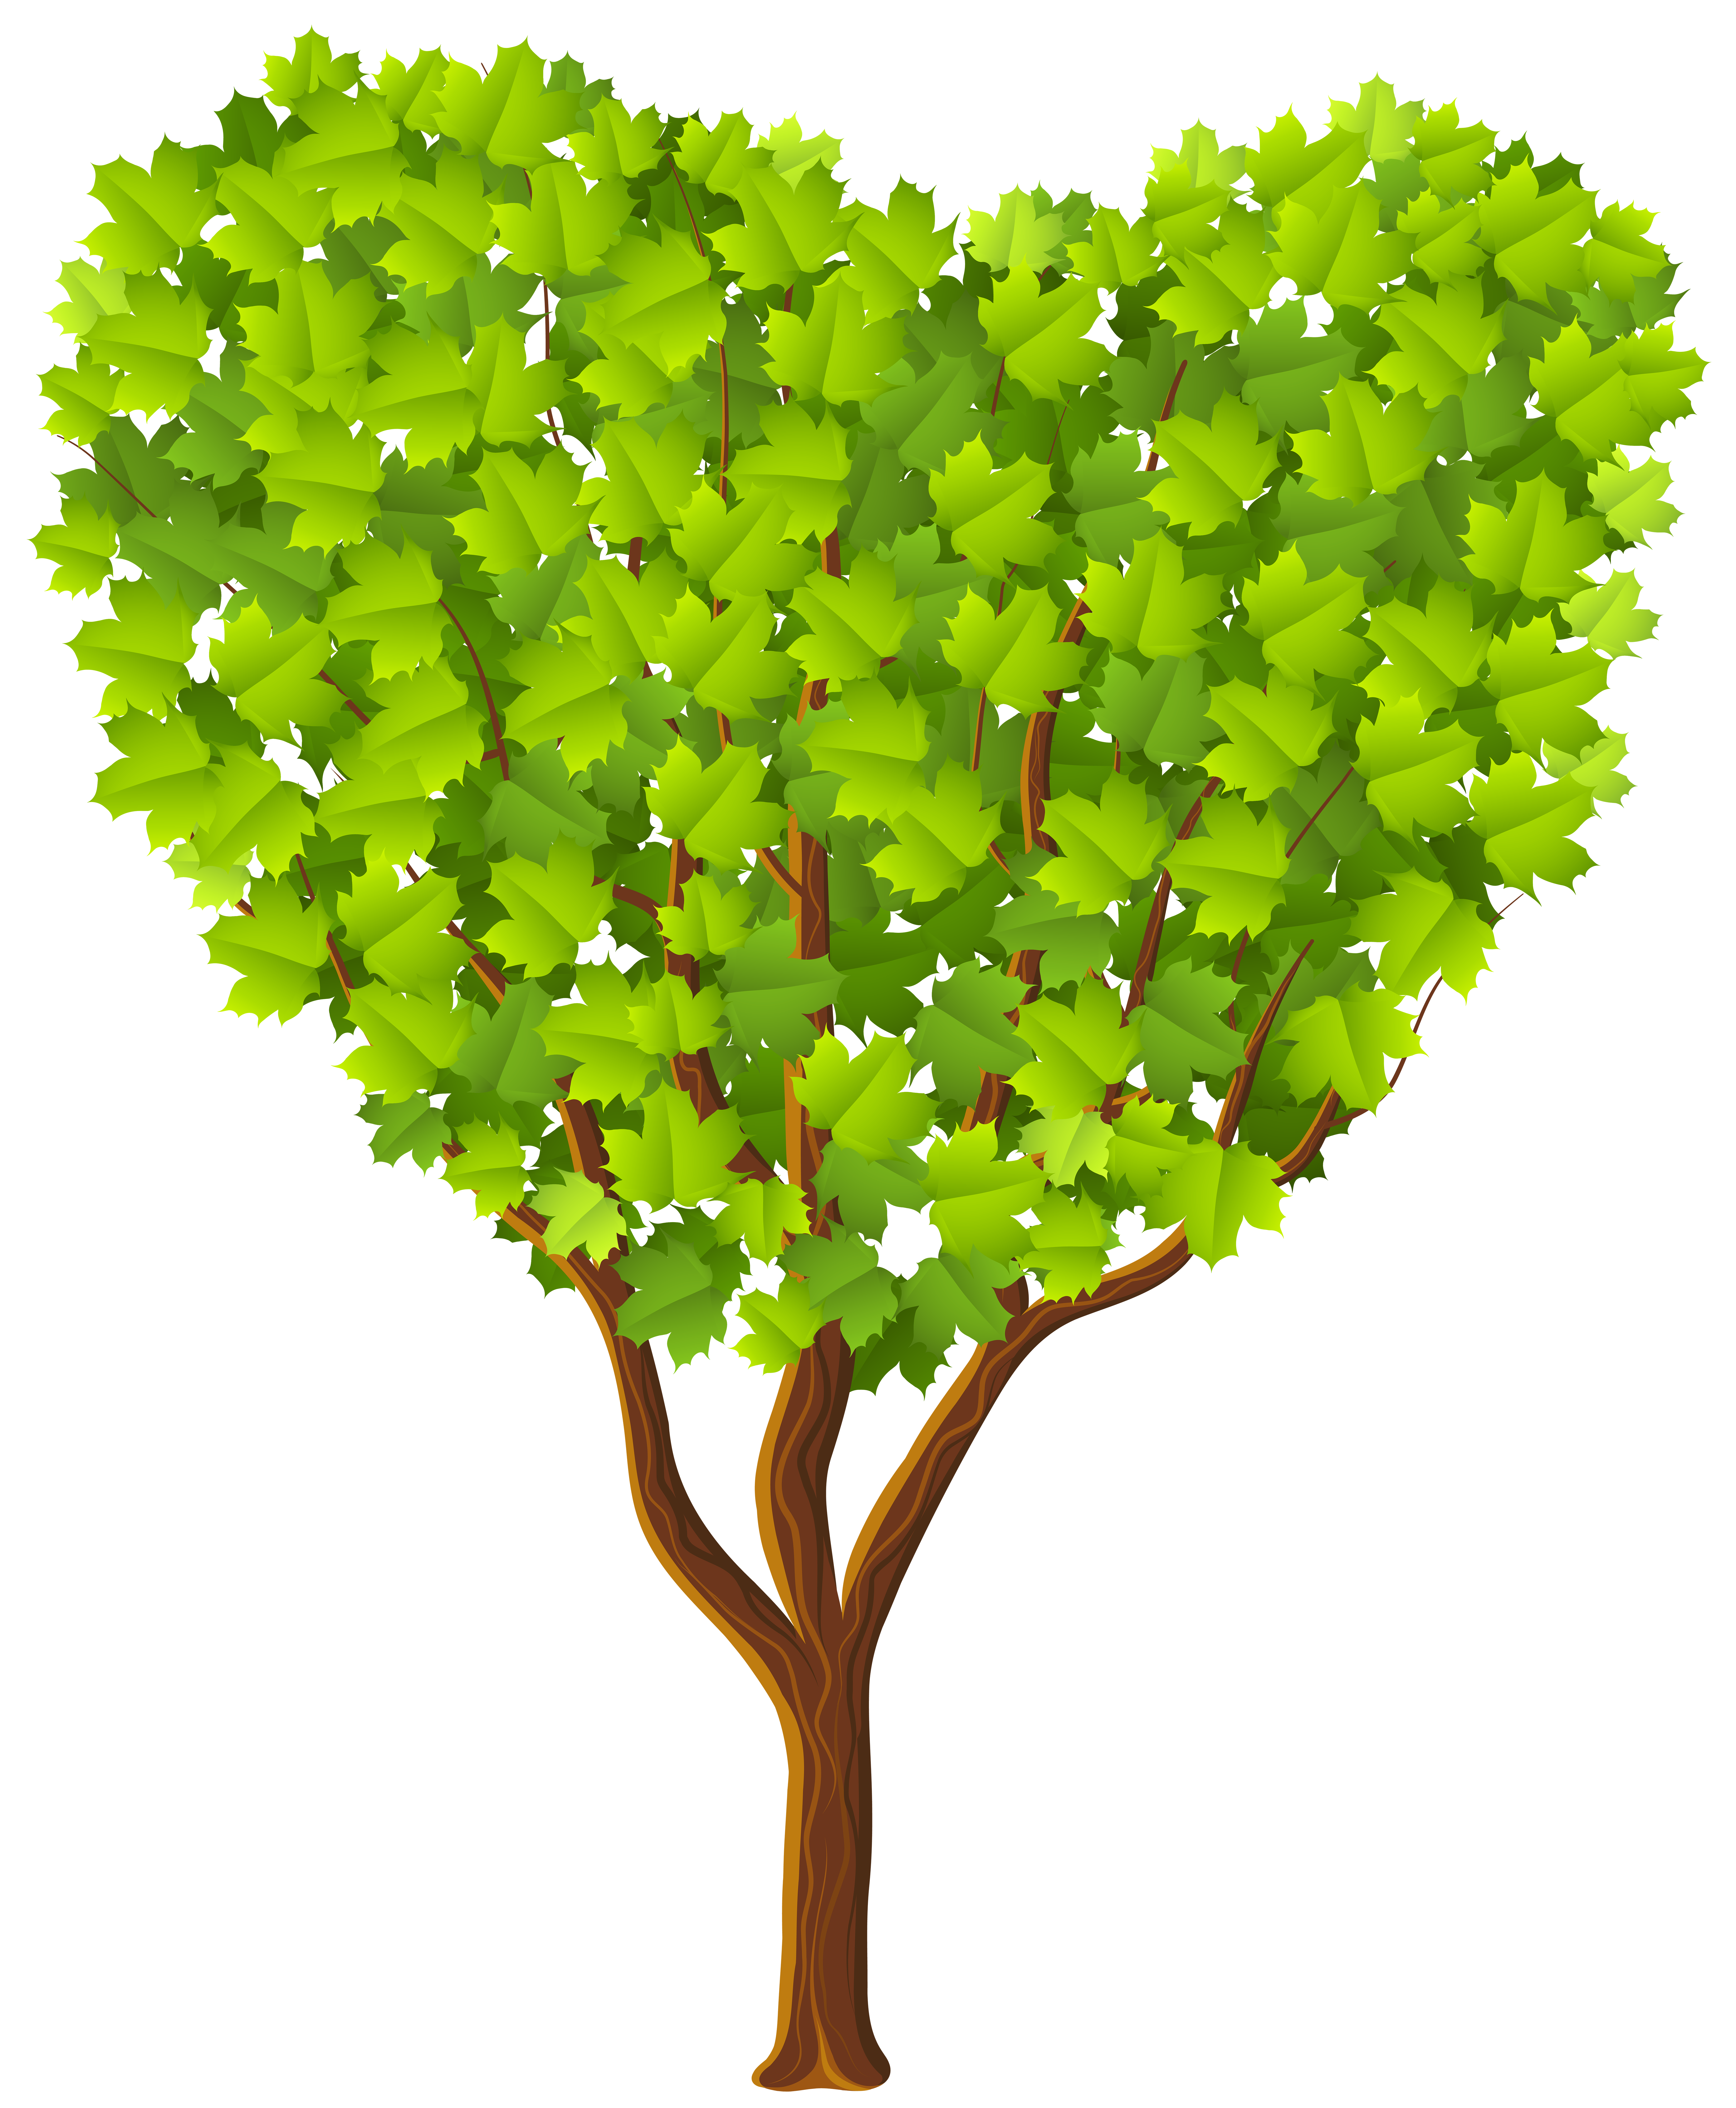 Дерево картинка на прозрачном фоне. Дерево зеленое. Зеленое дерево на прозрачном фоне. Дерево на зелёном фоне. Дерево с кроной в форме сердца.